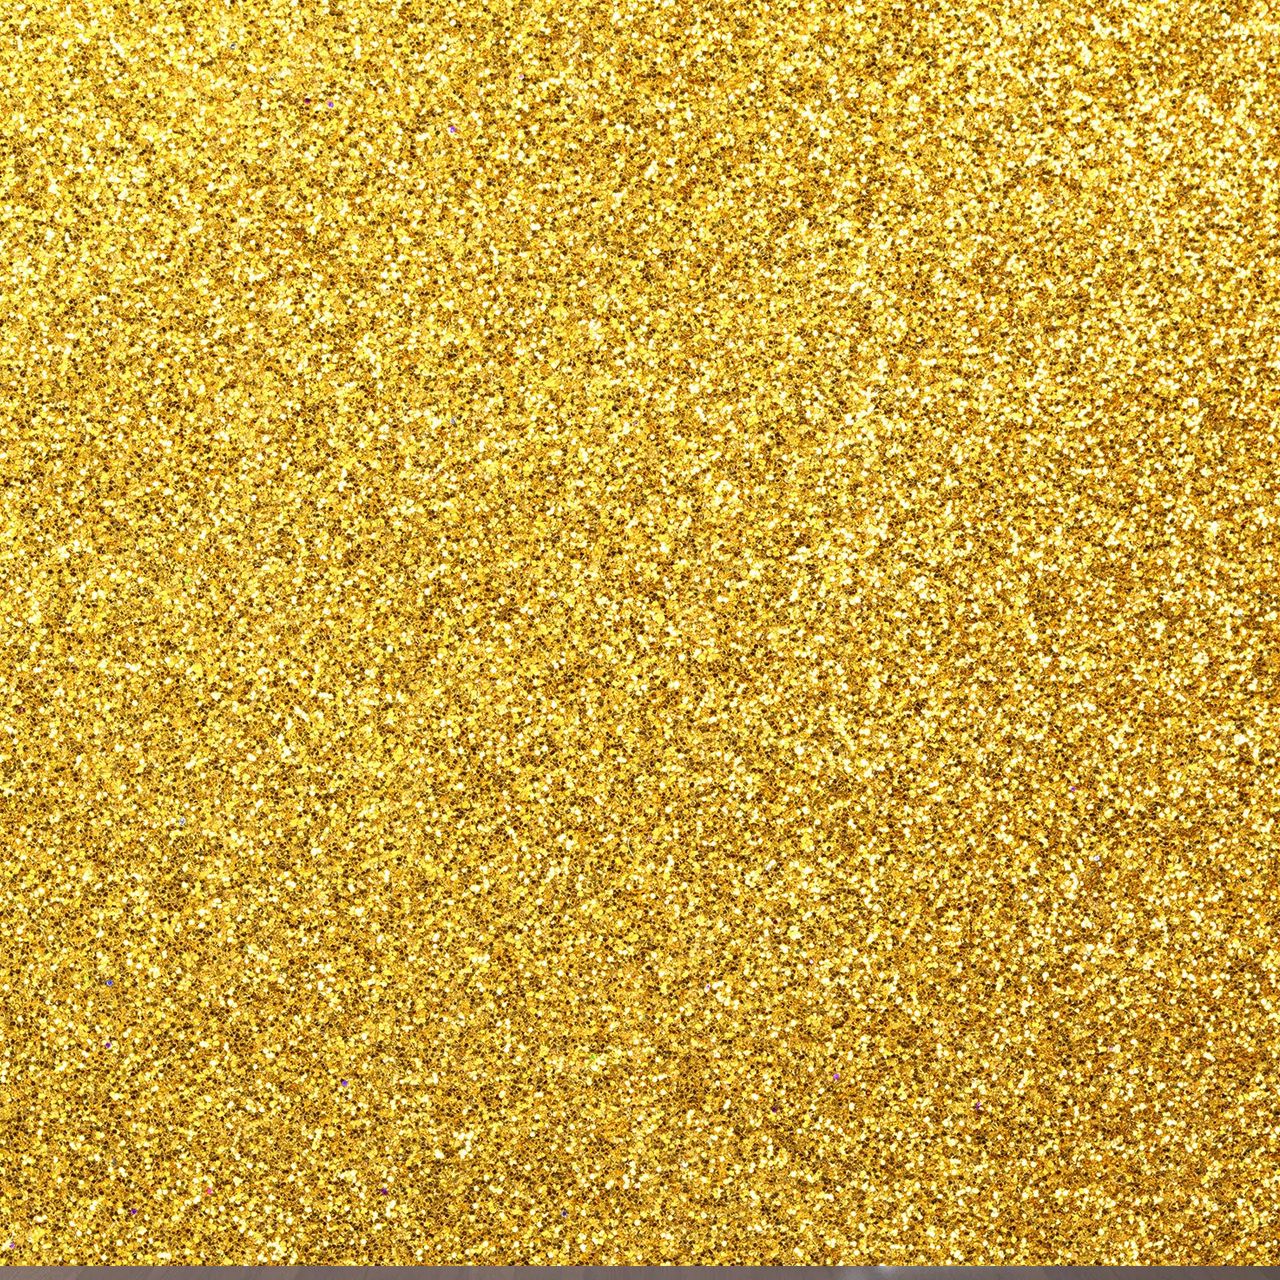 Gold Glitter Wallpaper Dust .wallpapertip.com